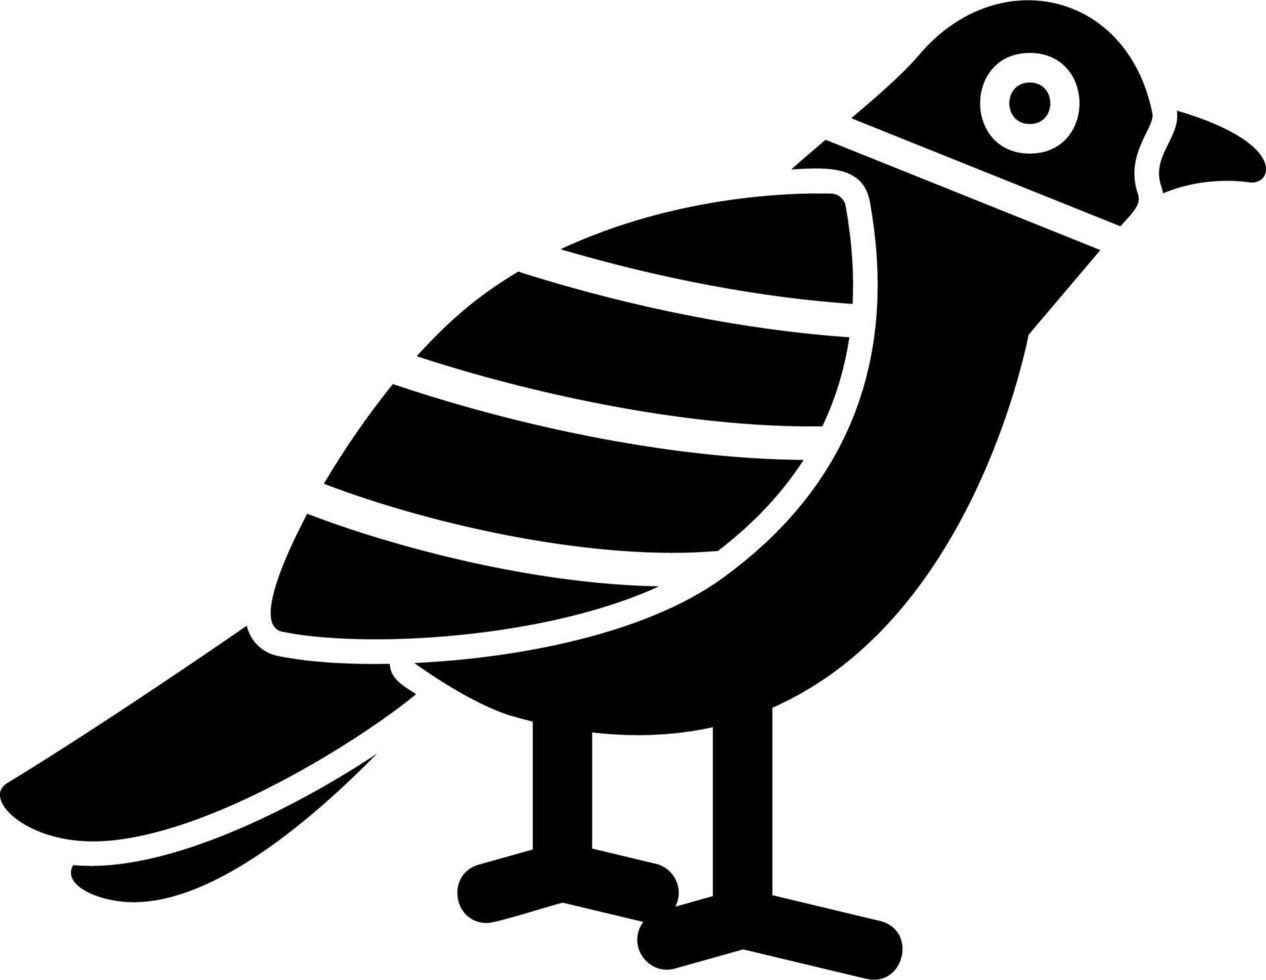 Sparrow Vector Icon